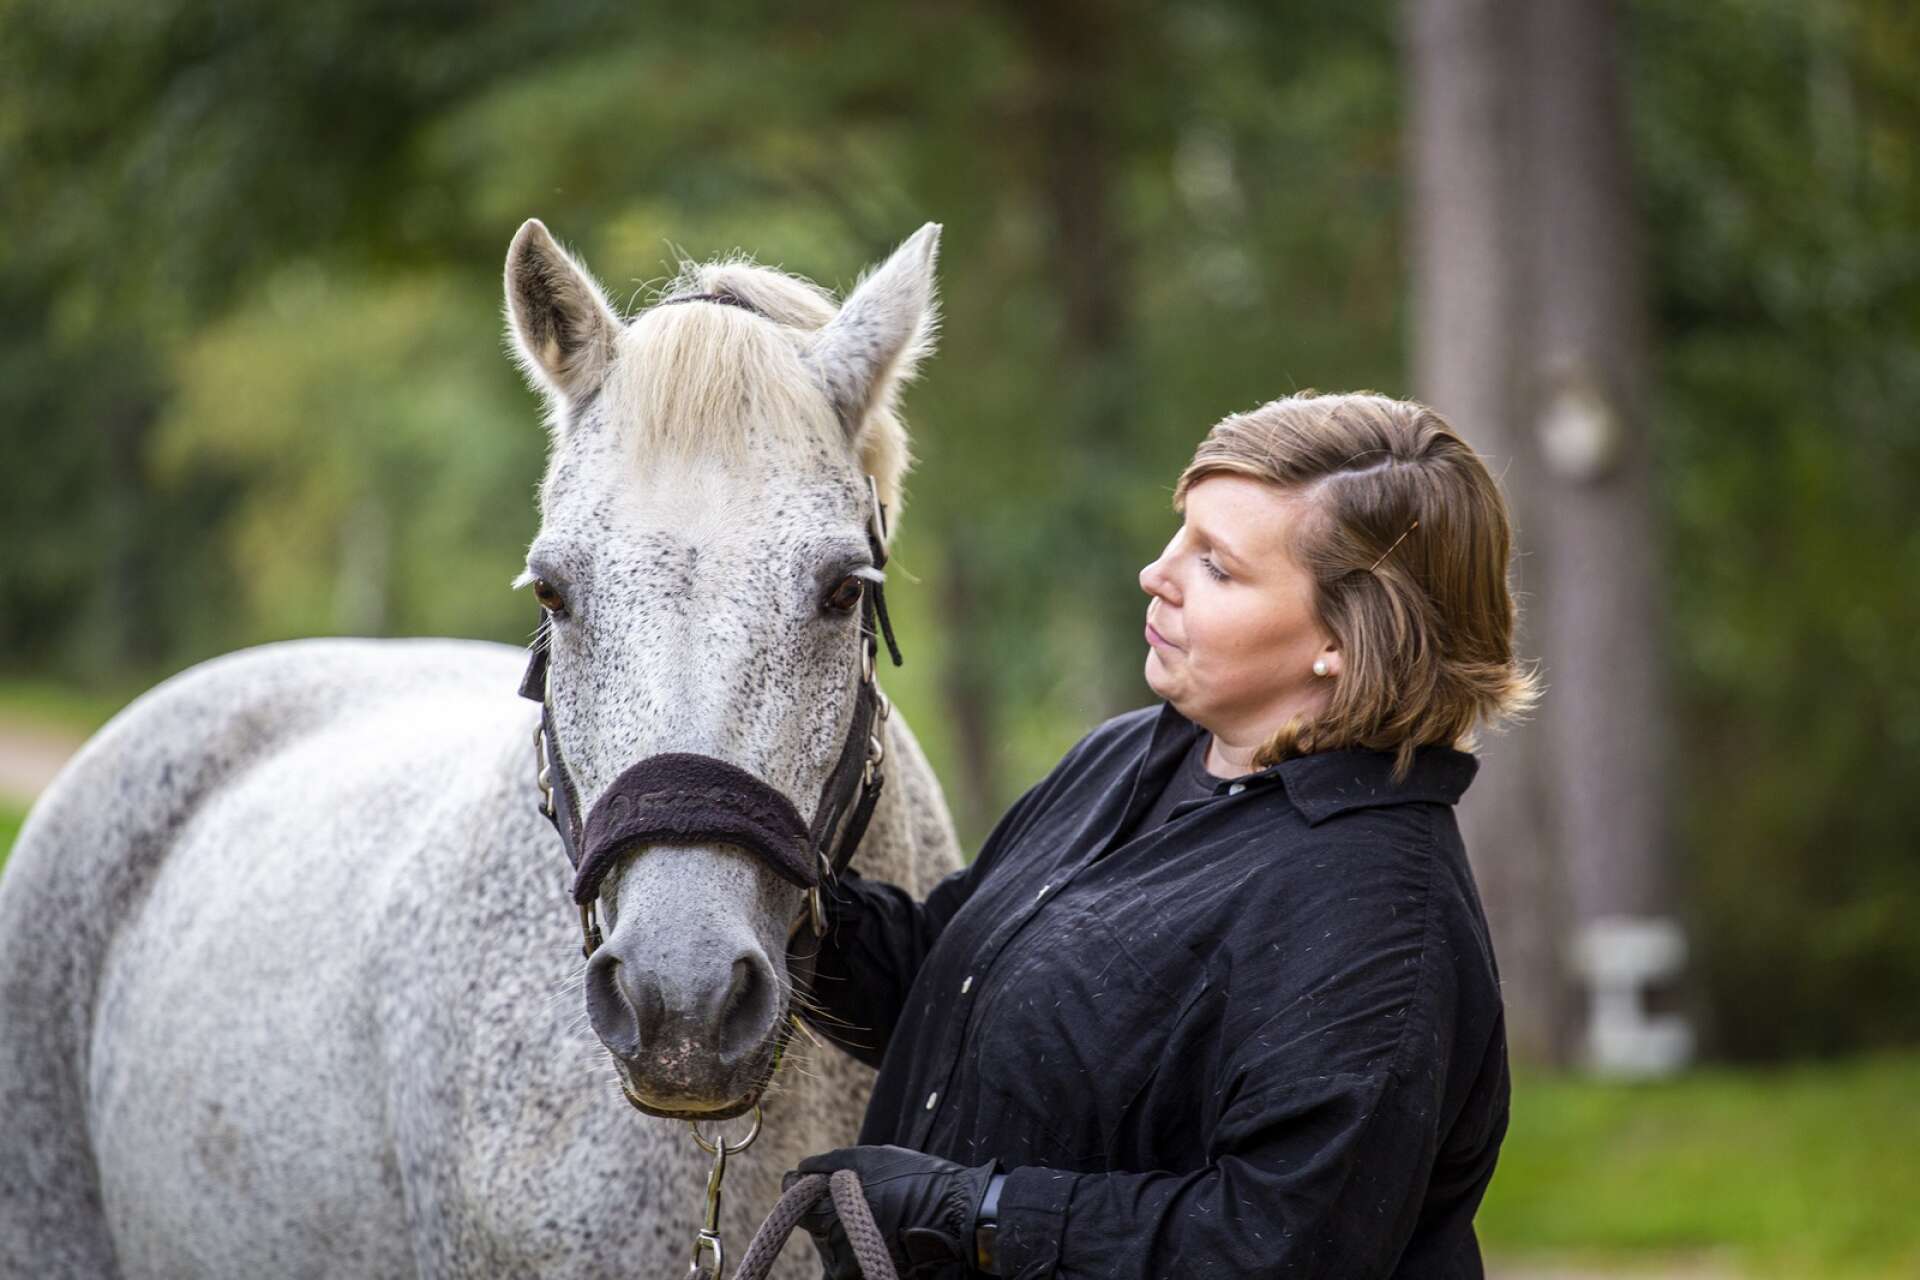 Jenni Varis, i dag snart 27 år, var 24 år när hon fick diagnosen bröstcancer. Sambo, familj och vänner har varit en stor hjälp under behandlingen – likaså stallet, stallkompisarna och hästen Diza.